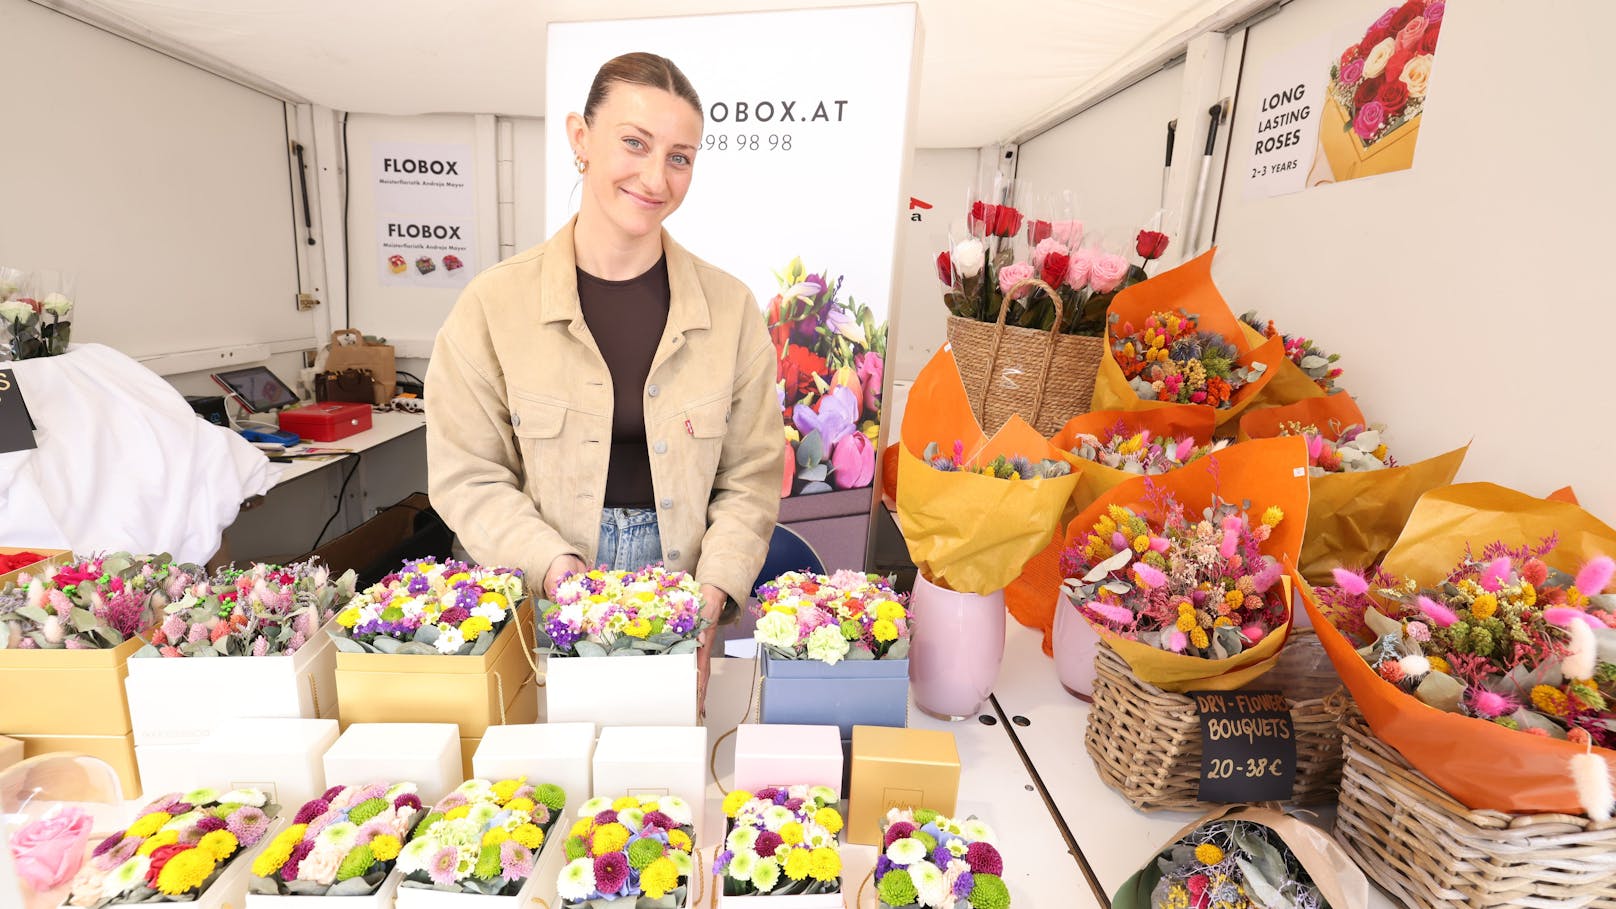 Das Unternehmen "Flowerbox" war am Festival vertreten.